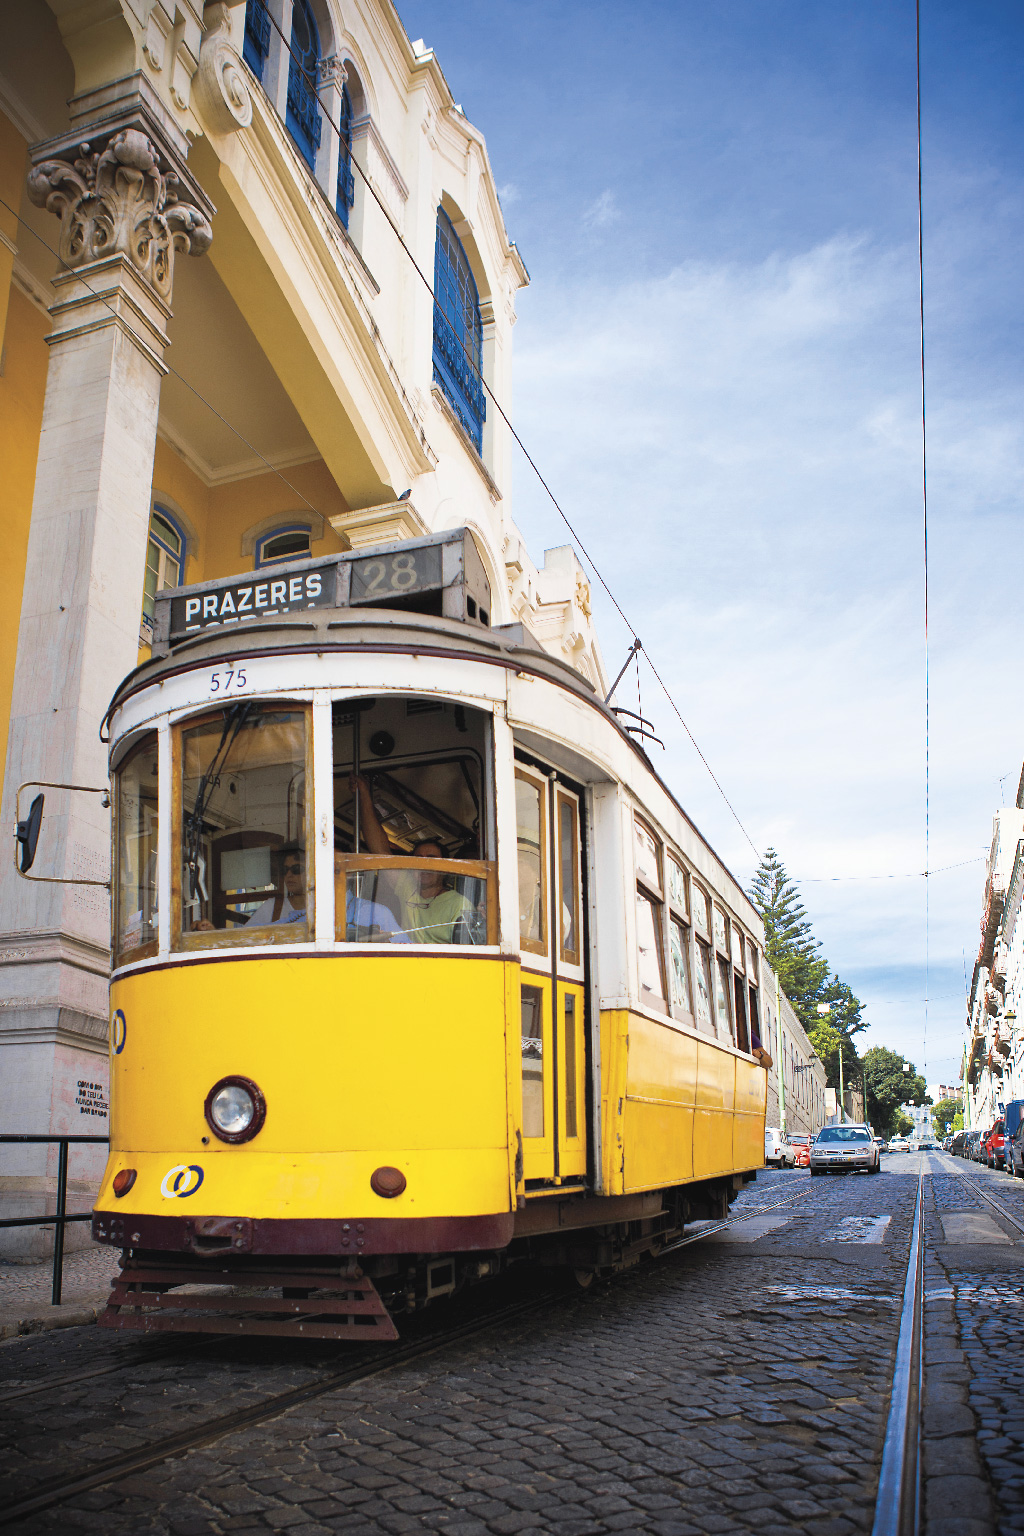 a tram in Lisbon